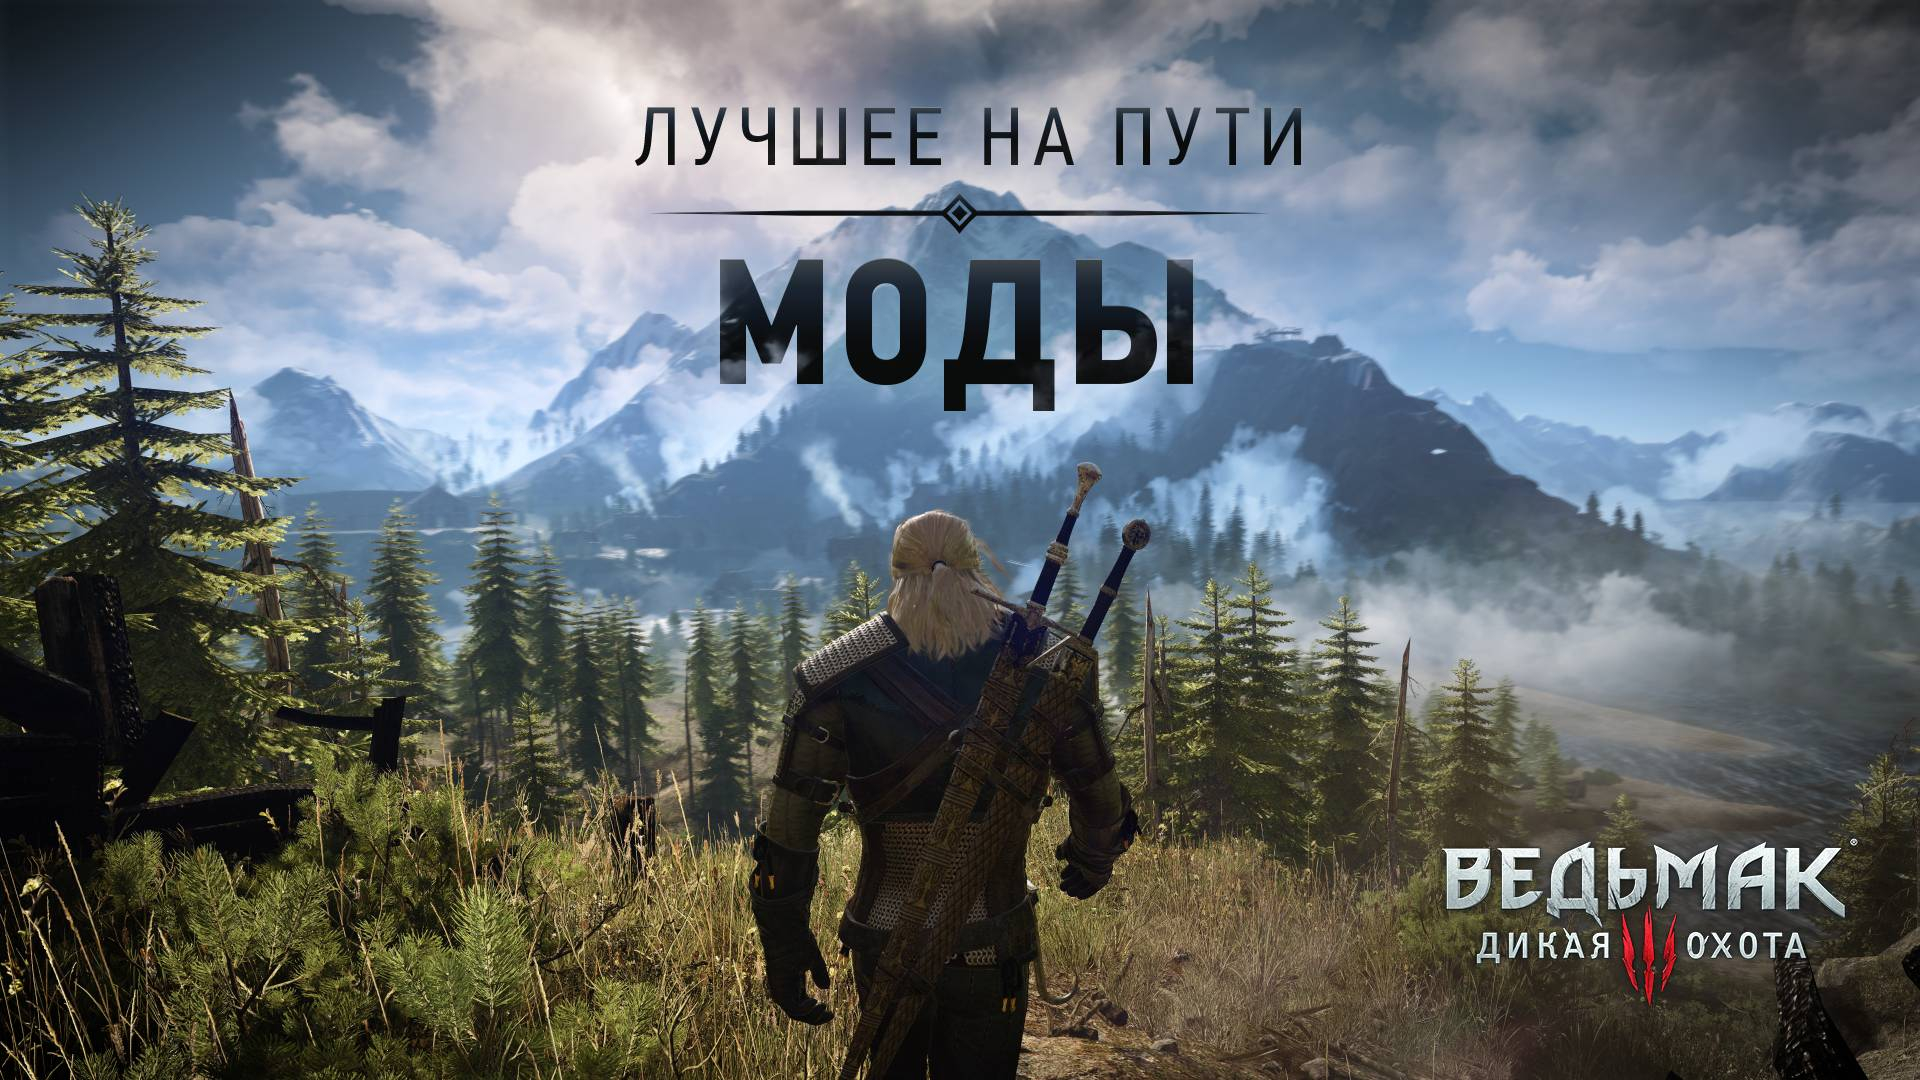 Улучшение графики и новый контент: десять лучших модов для игр серии The Witcher по версии CD Projekt RED